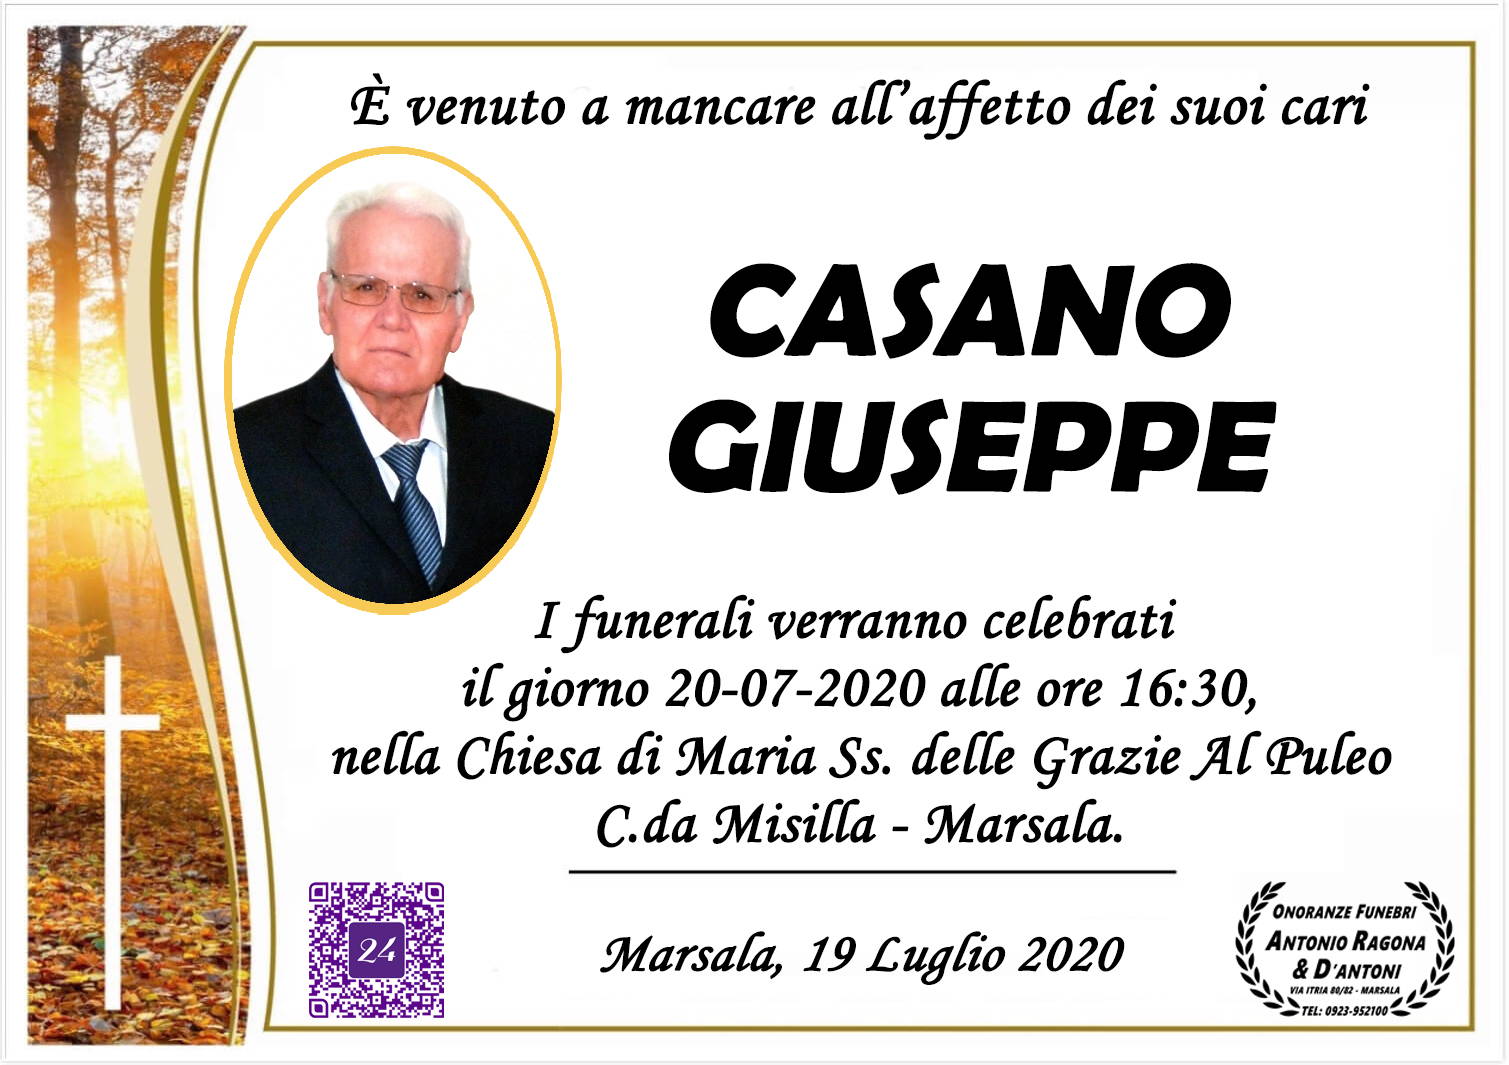 Giuseppe Casano